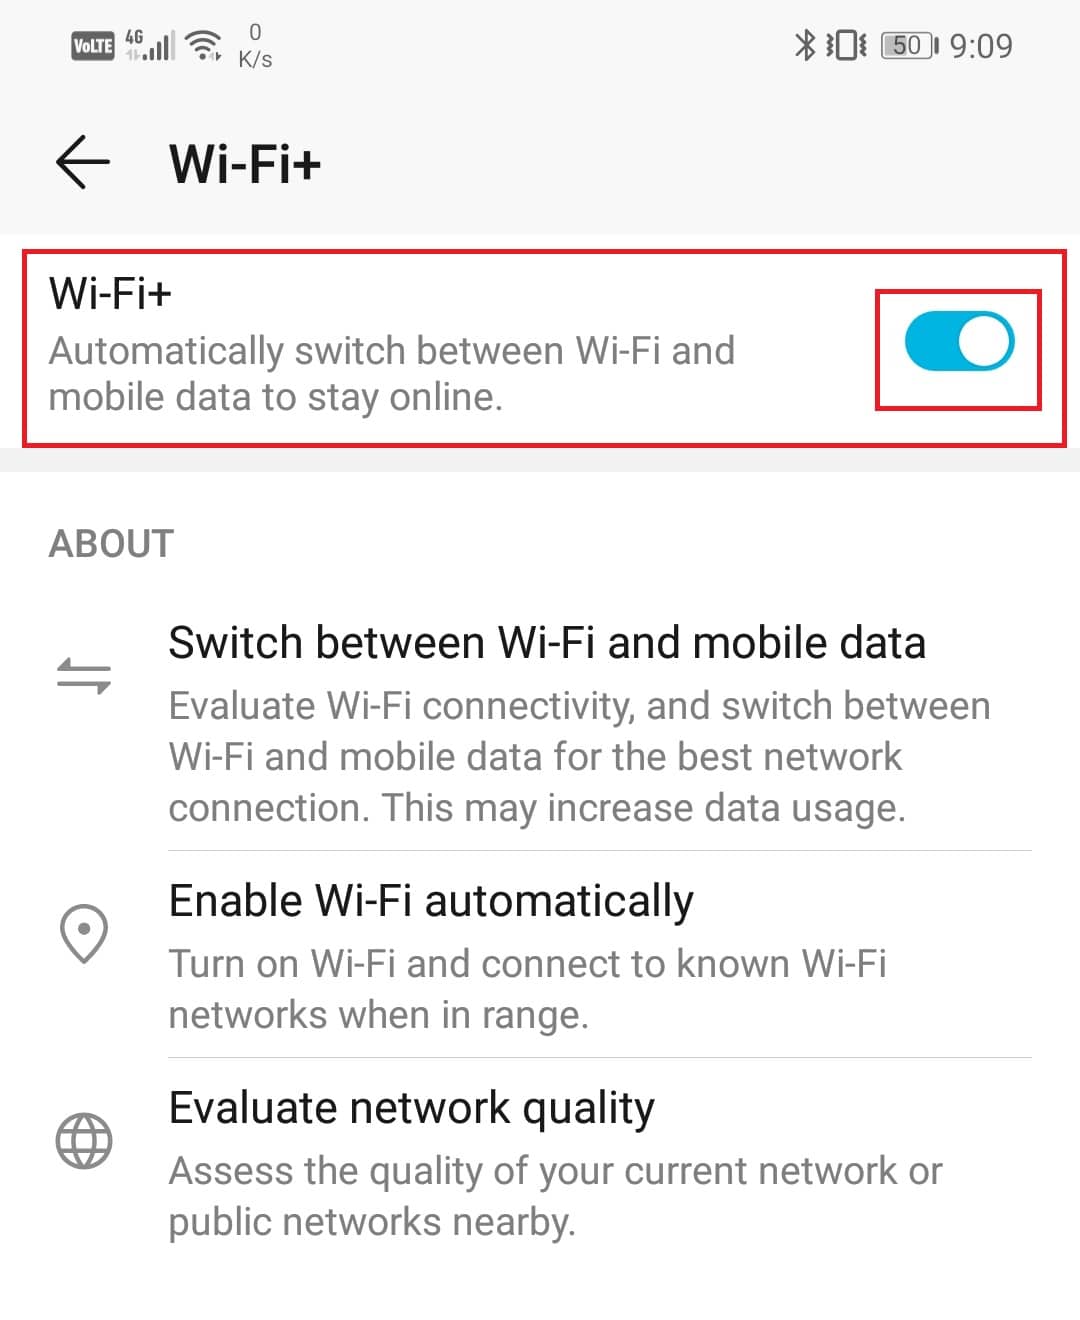 povolte přepínač vedle možnosti Wi-Fi+. | zesílení signálu Wi-Fi v systému Android